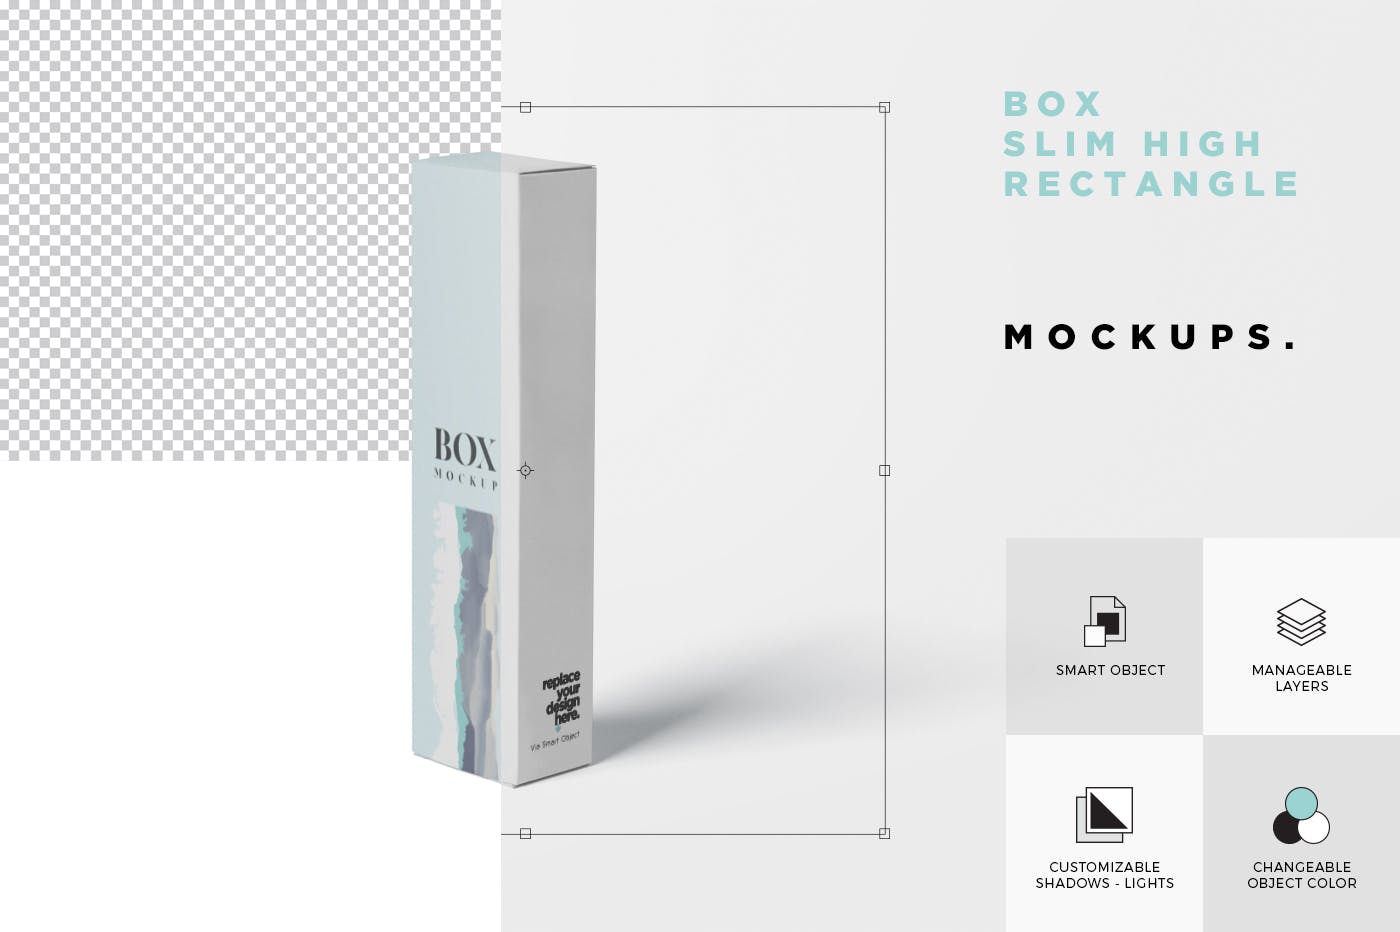 长条形化妆品/护肤品包装纸盒设计图样机 Box Mockup – Slim High Rectangle Shape插图(5)